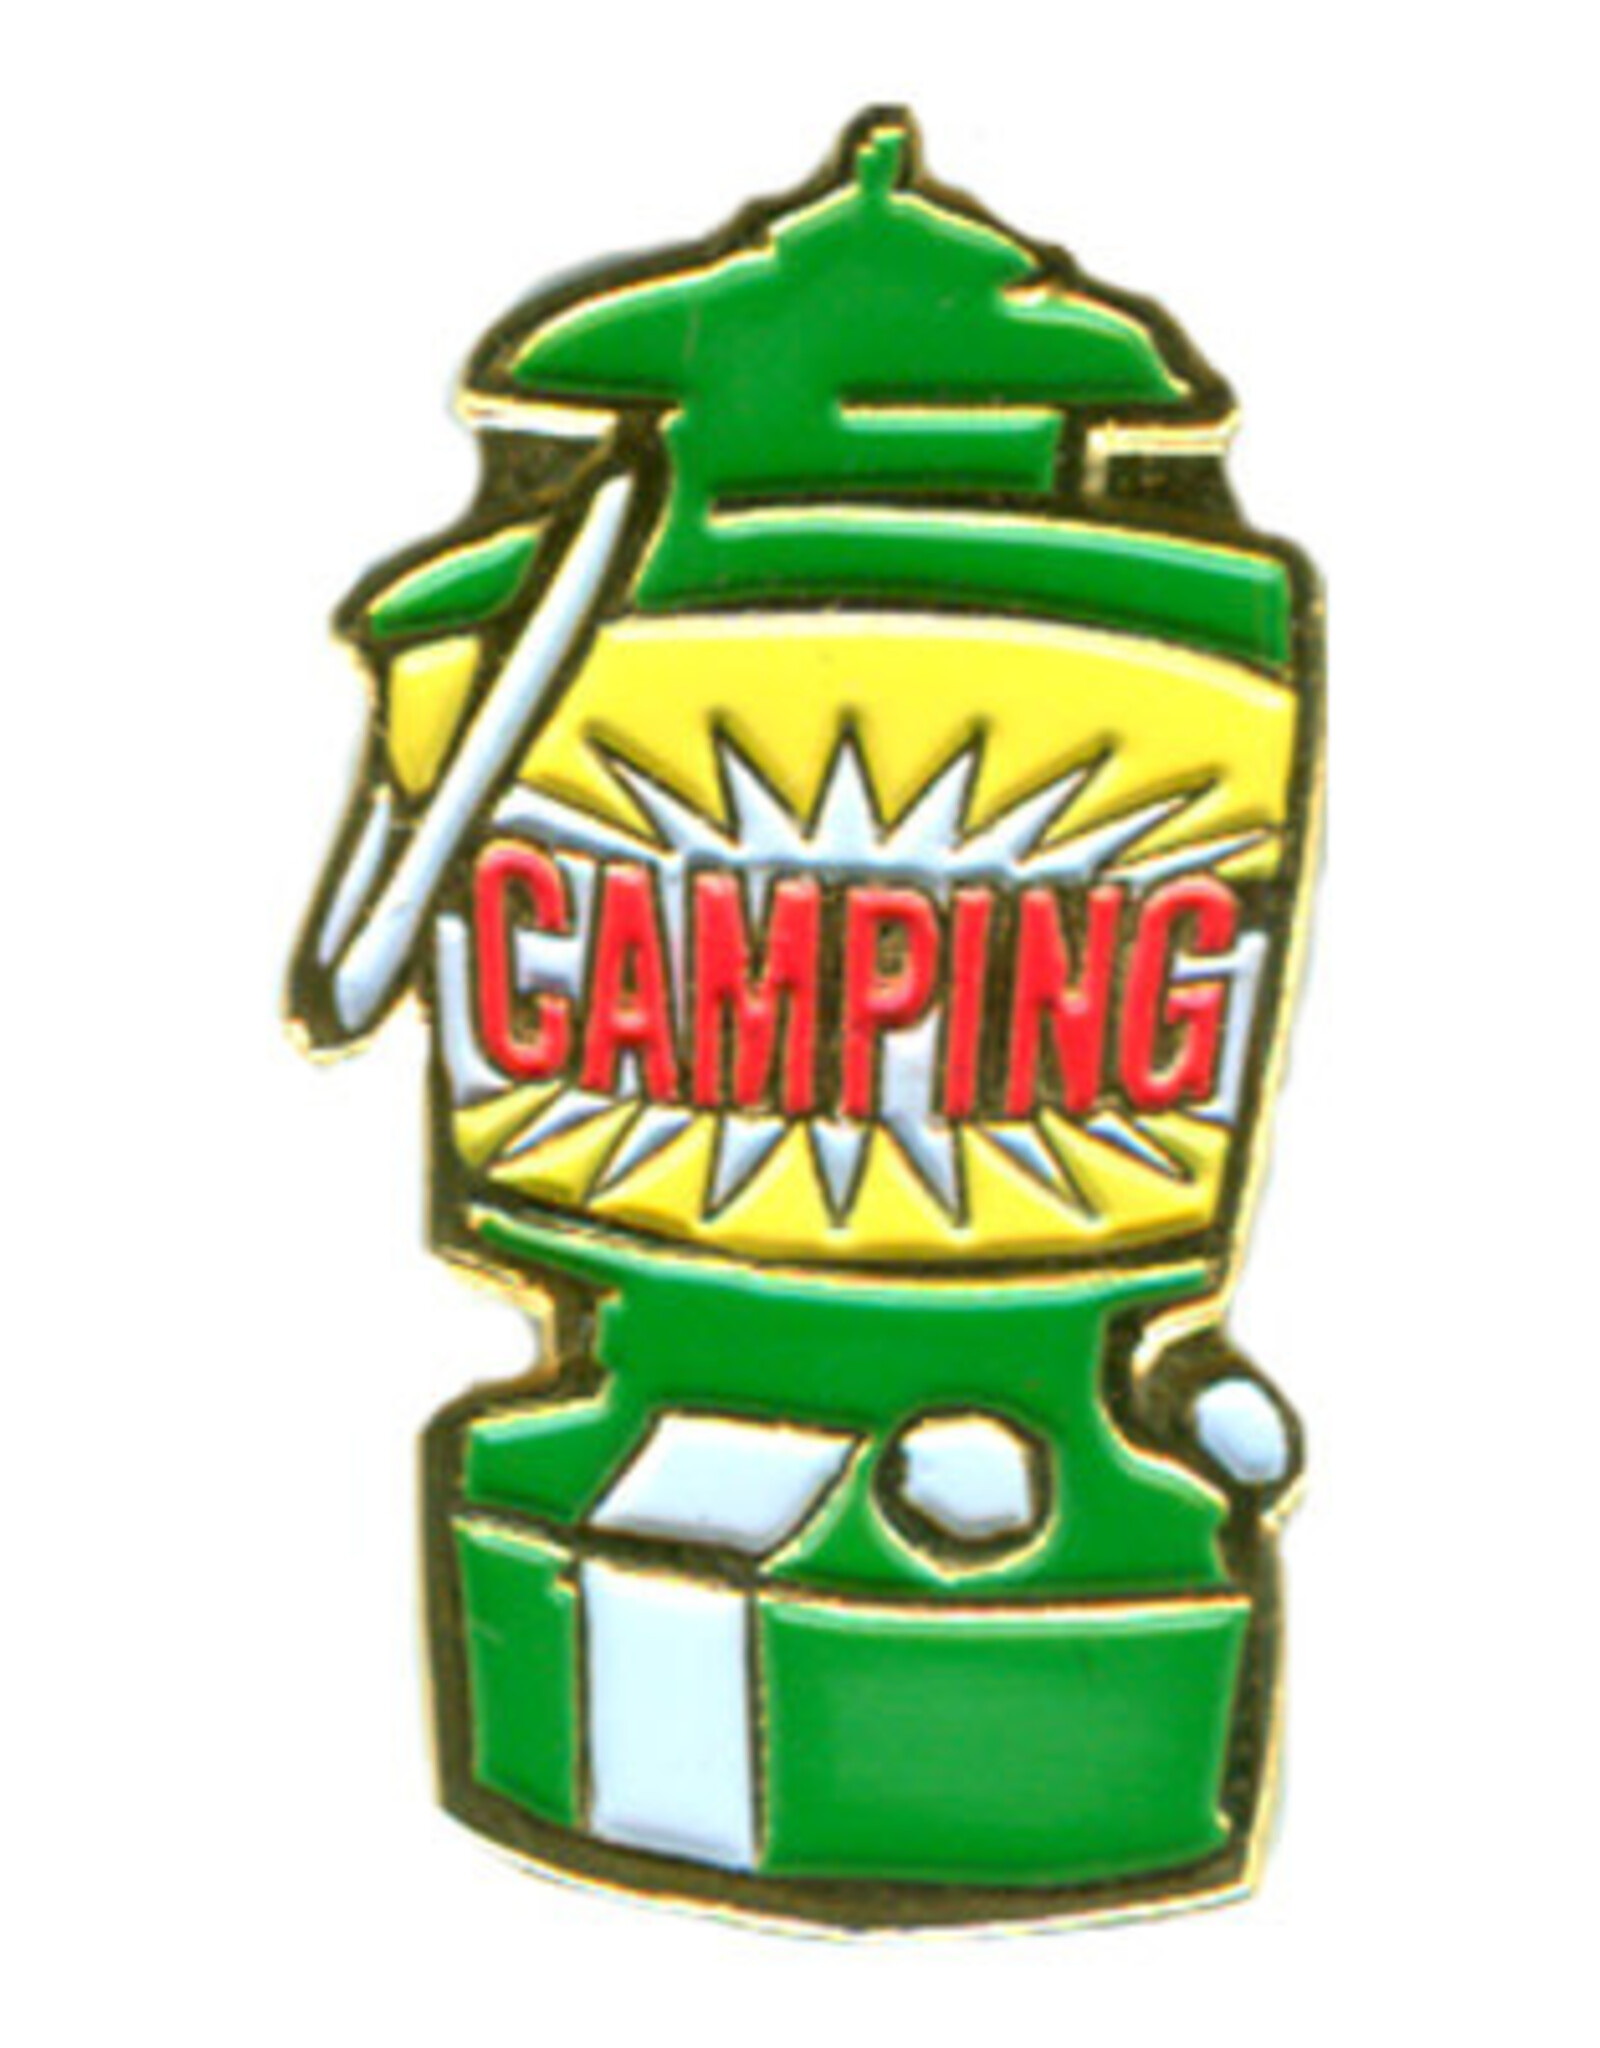 Camping (Lantern) Pin